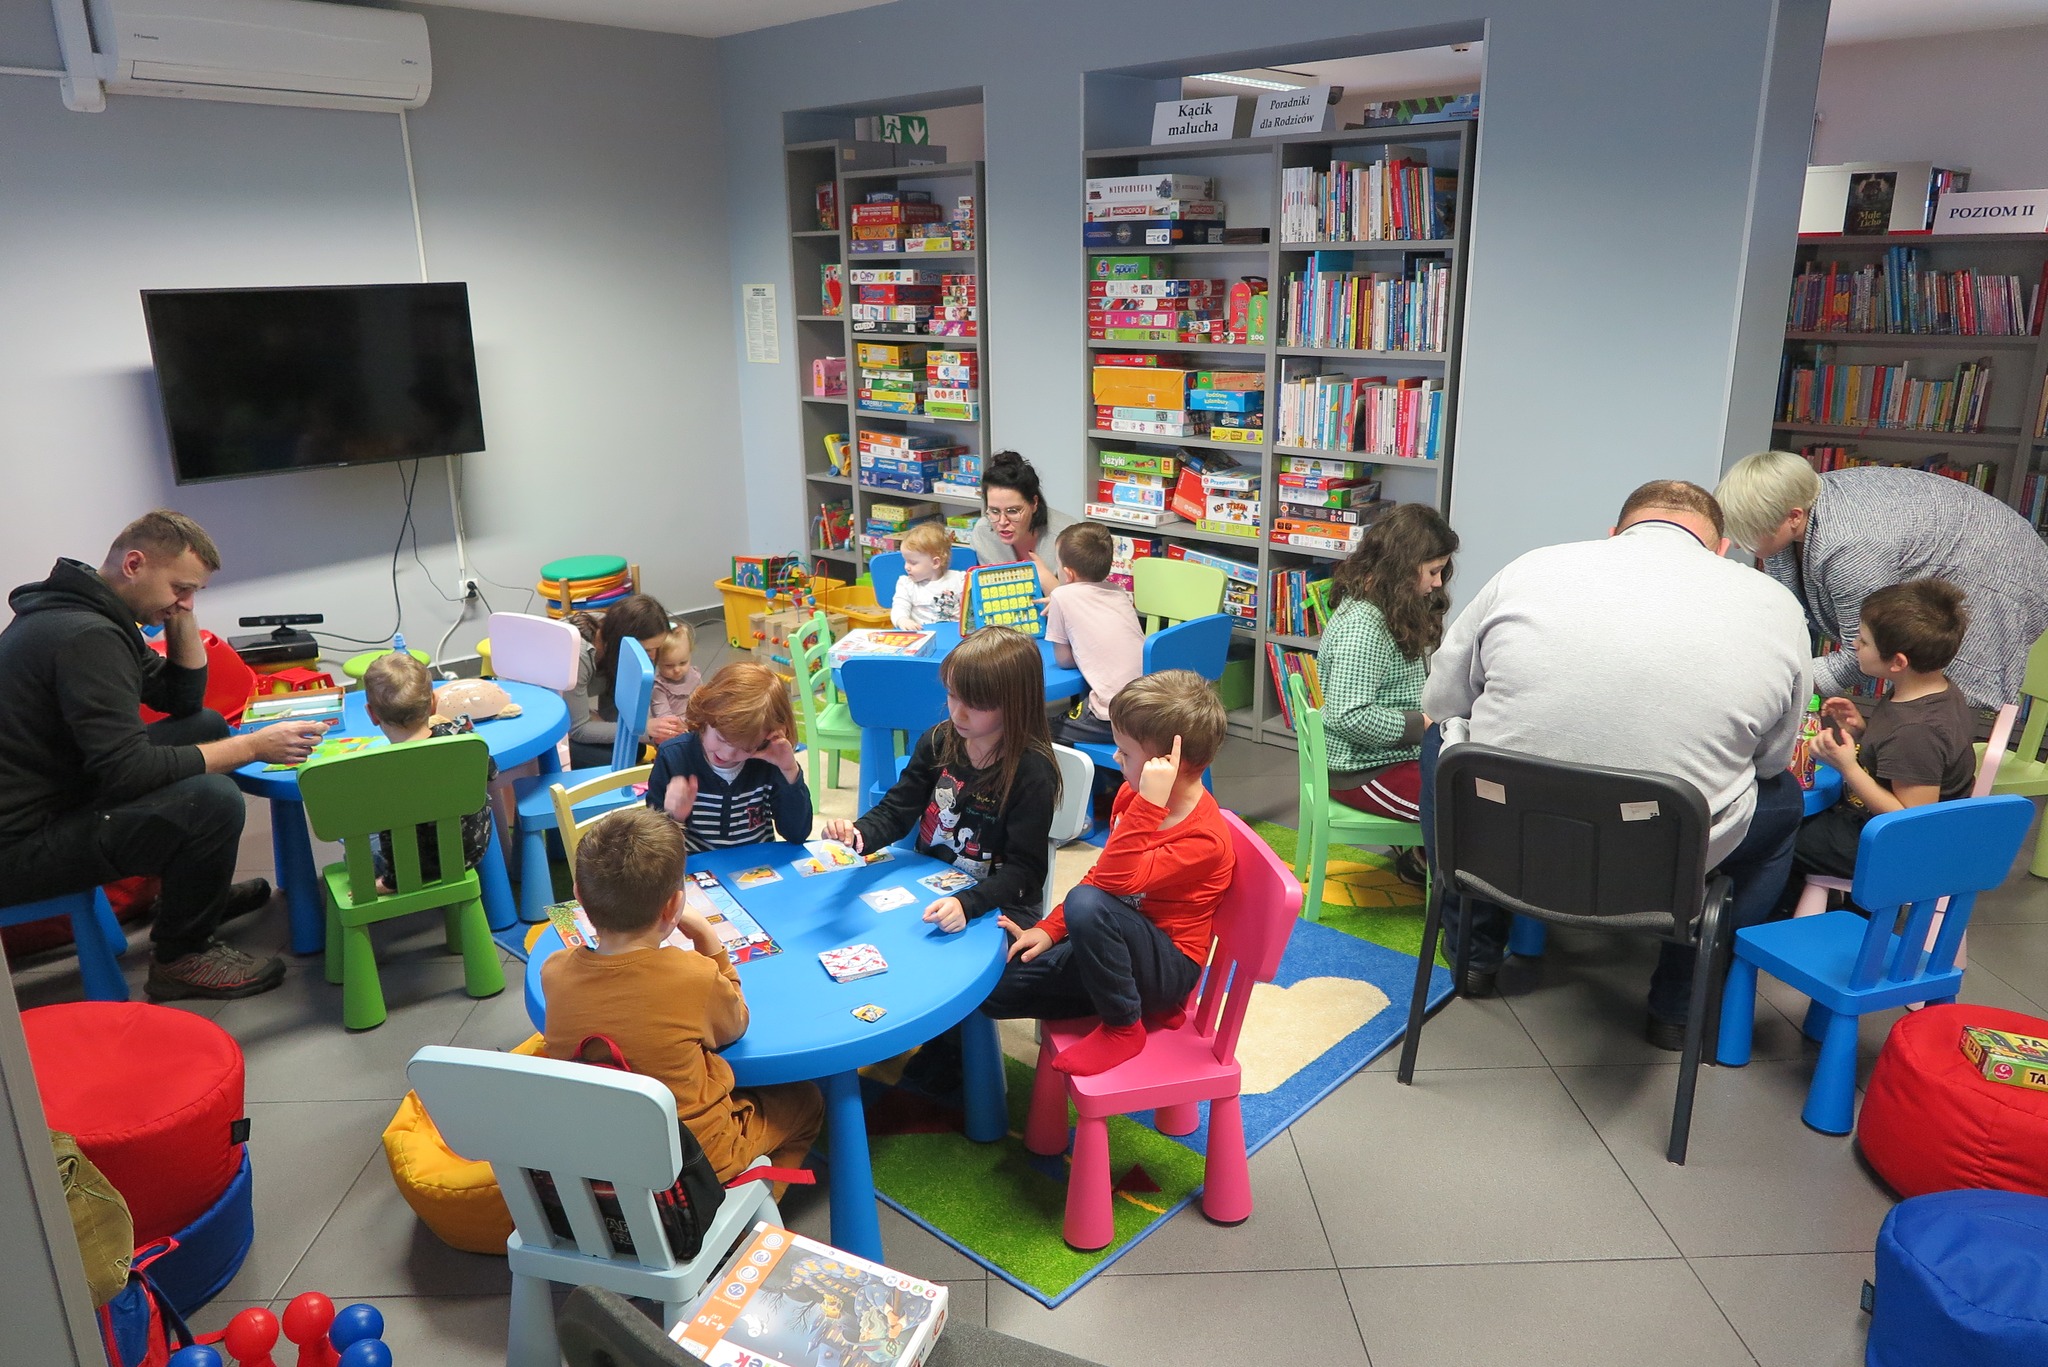 rodziny grające w gry planszowe w bibliotece